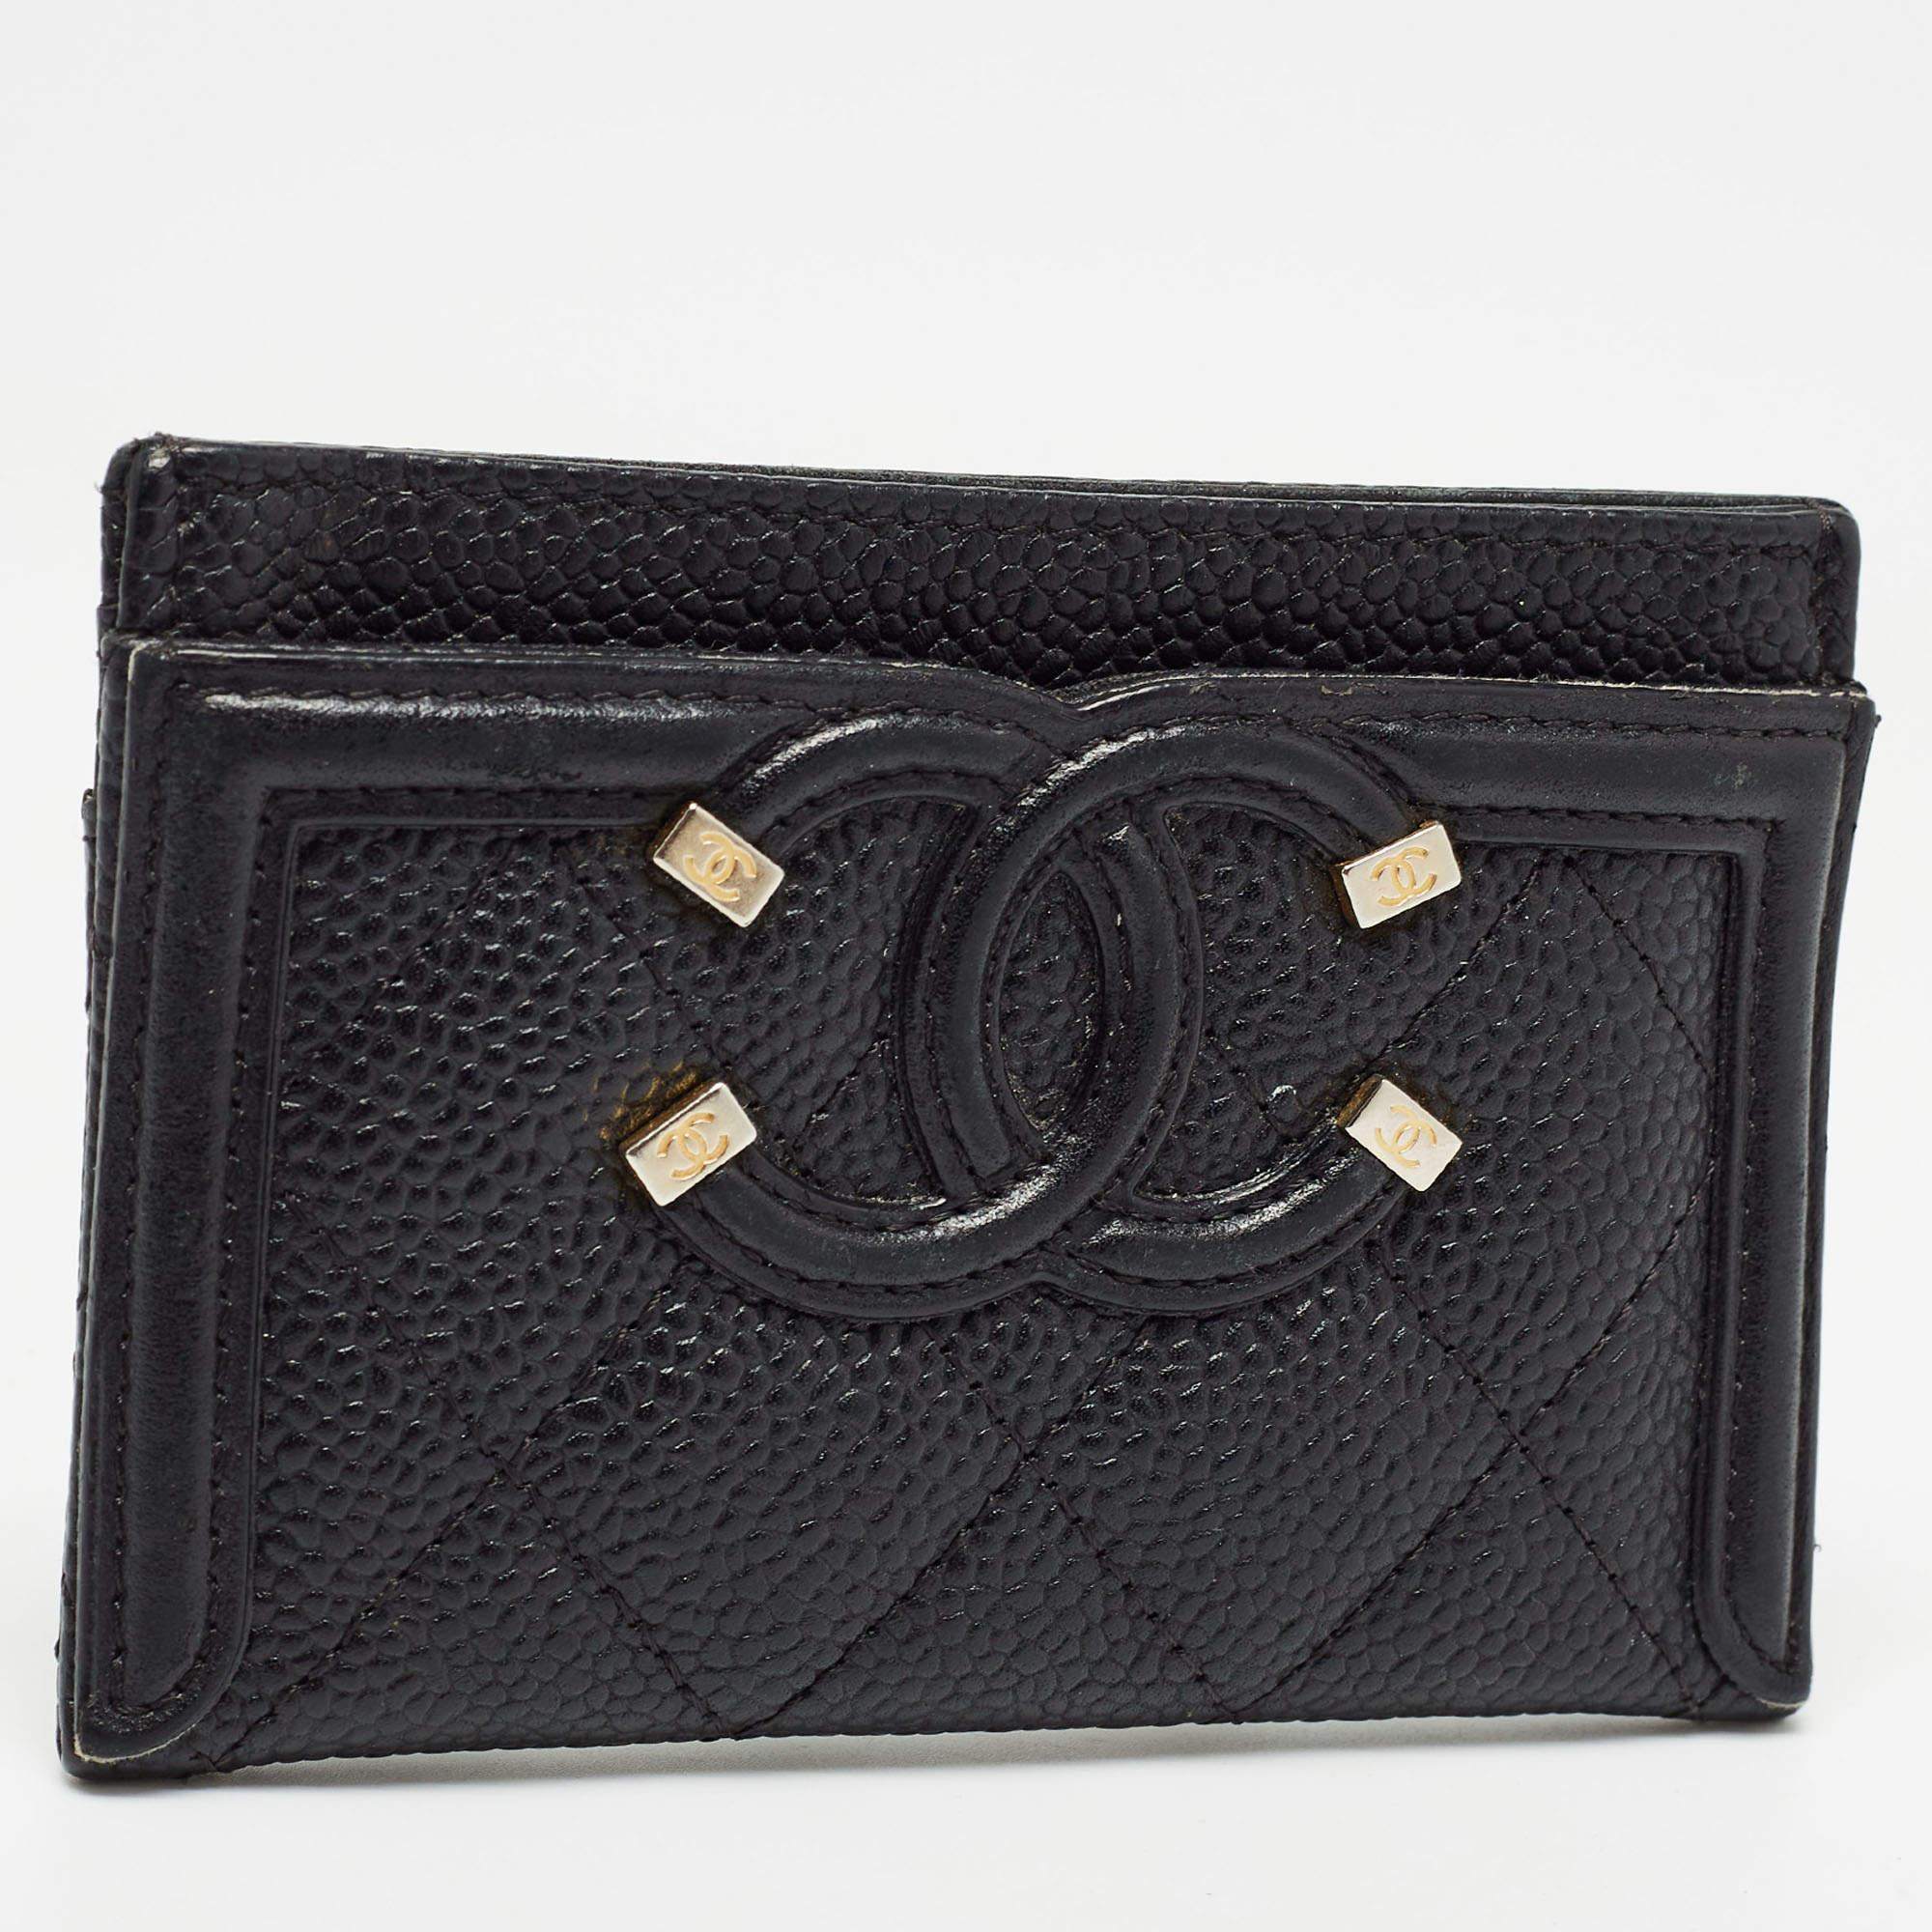 Conçu à la perfection et fabriqué à partir de cuir de caviar de qualité supérieure, ce porte-cartes peut devenir votre accessoire indispensable. En apportant élégance et classe à votre poche, cette création de Chanel est stylée et pratique. Il